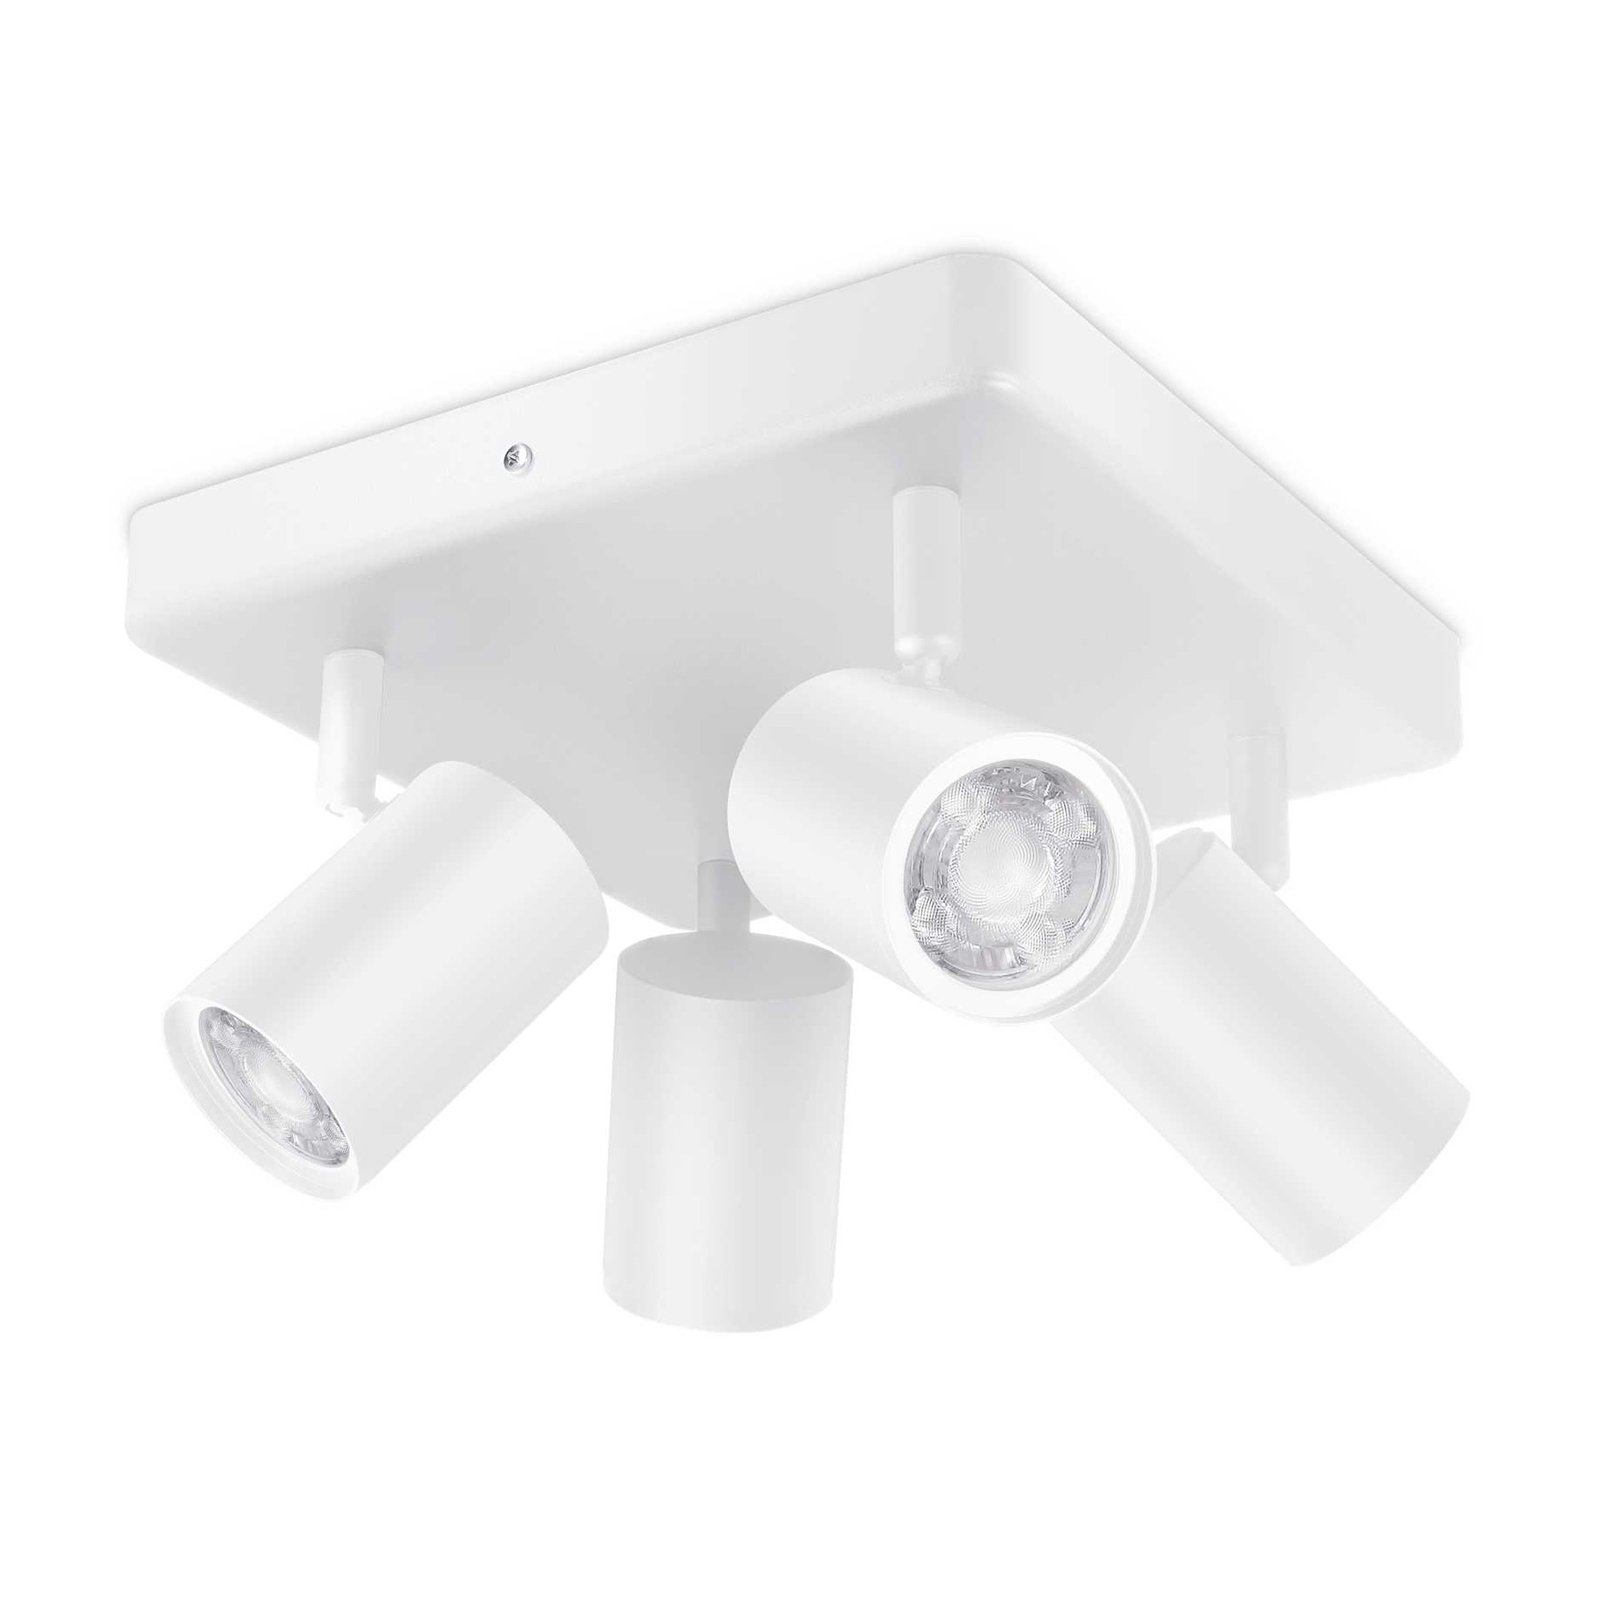 WiZ LED stropní spot Imageo, 4fl square white